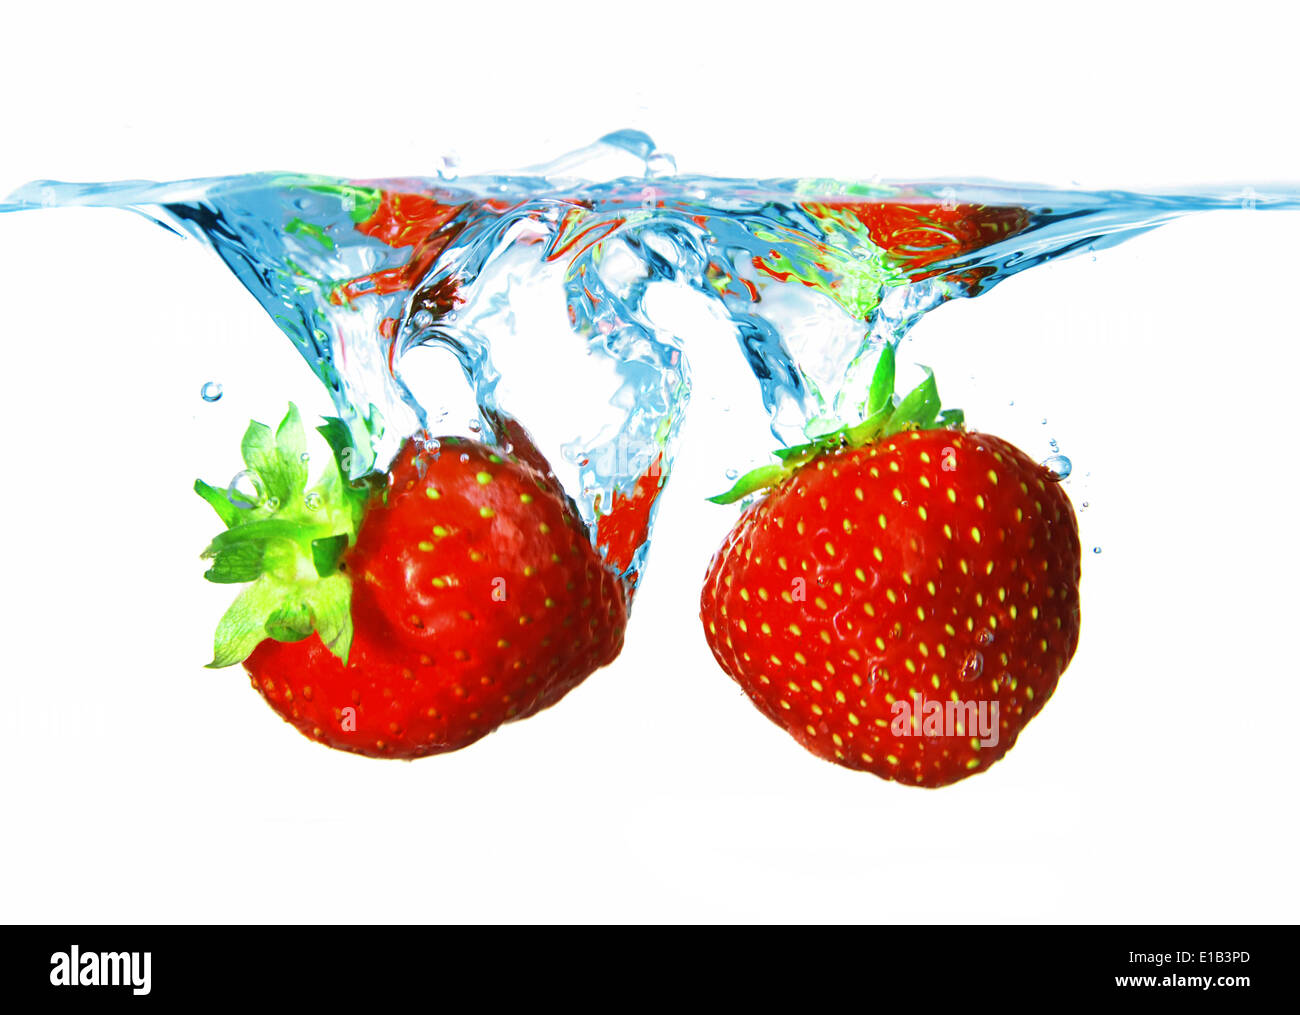 Les éclaboussures d'eau de deux belles fraises rouges mûrs Banque D'Images